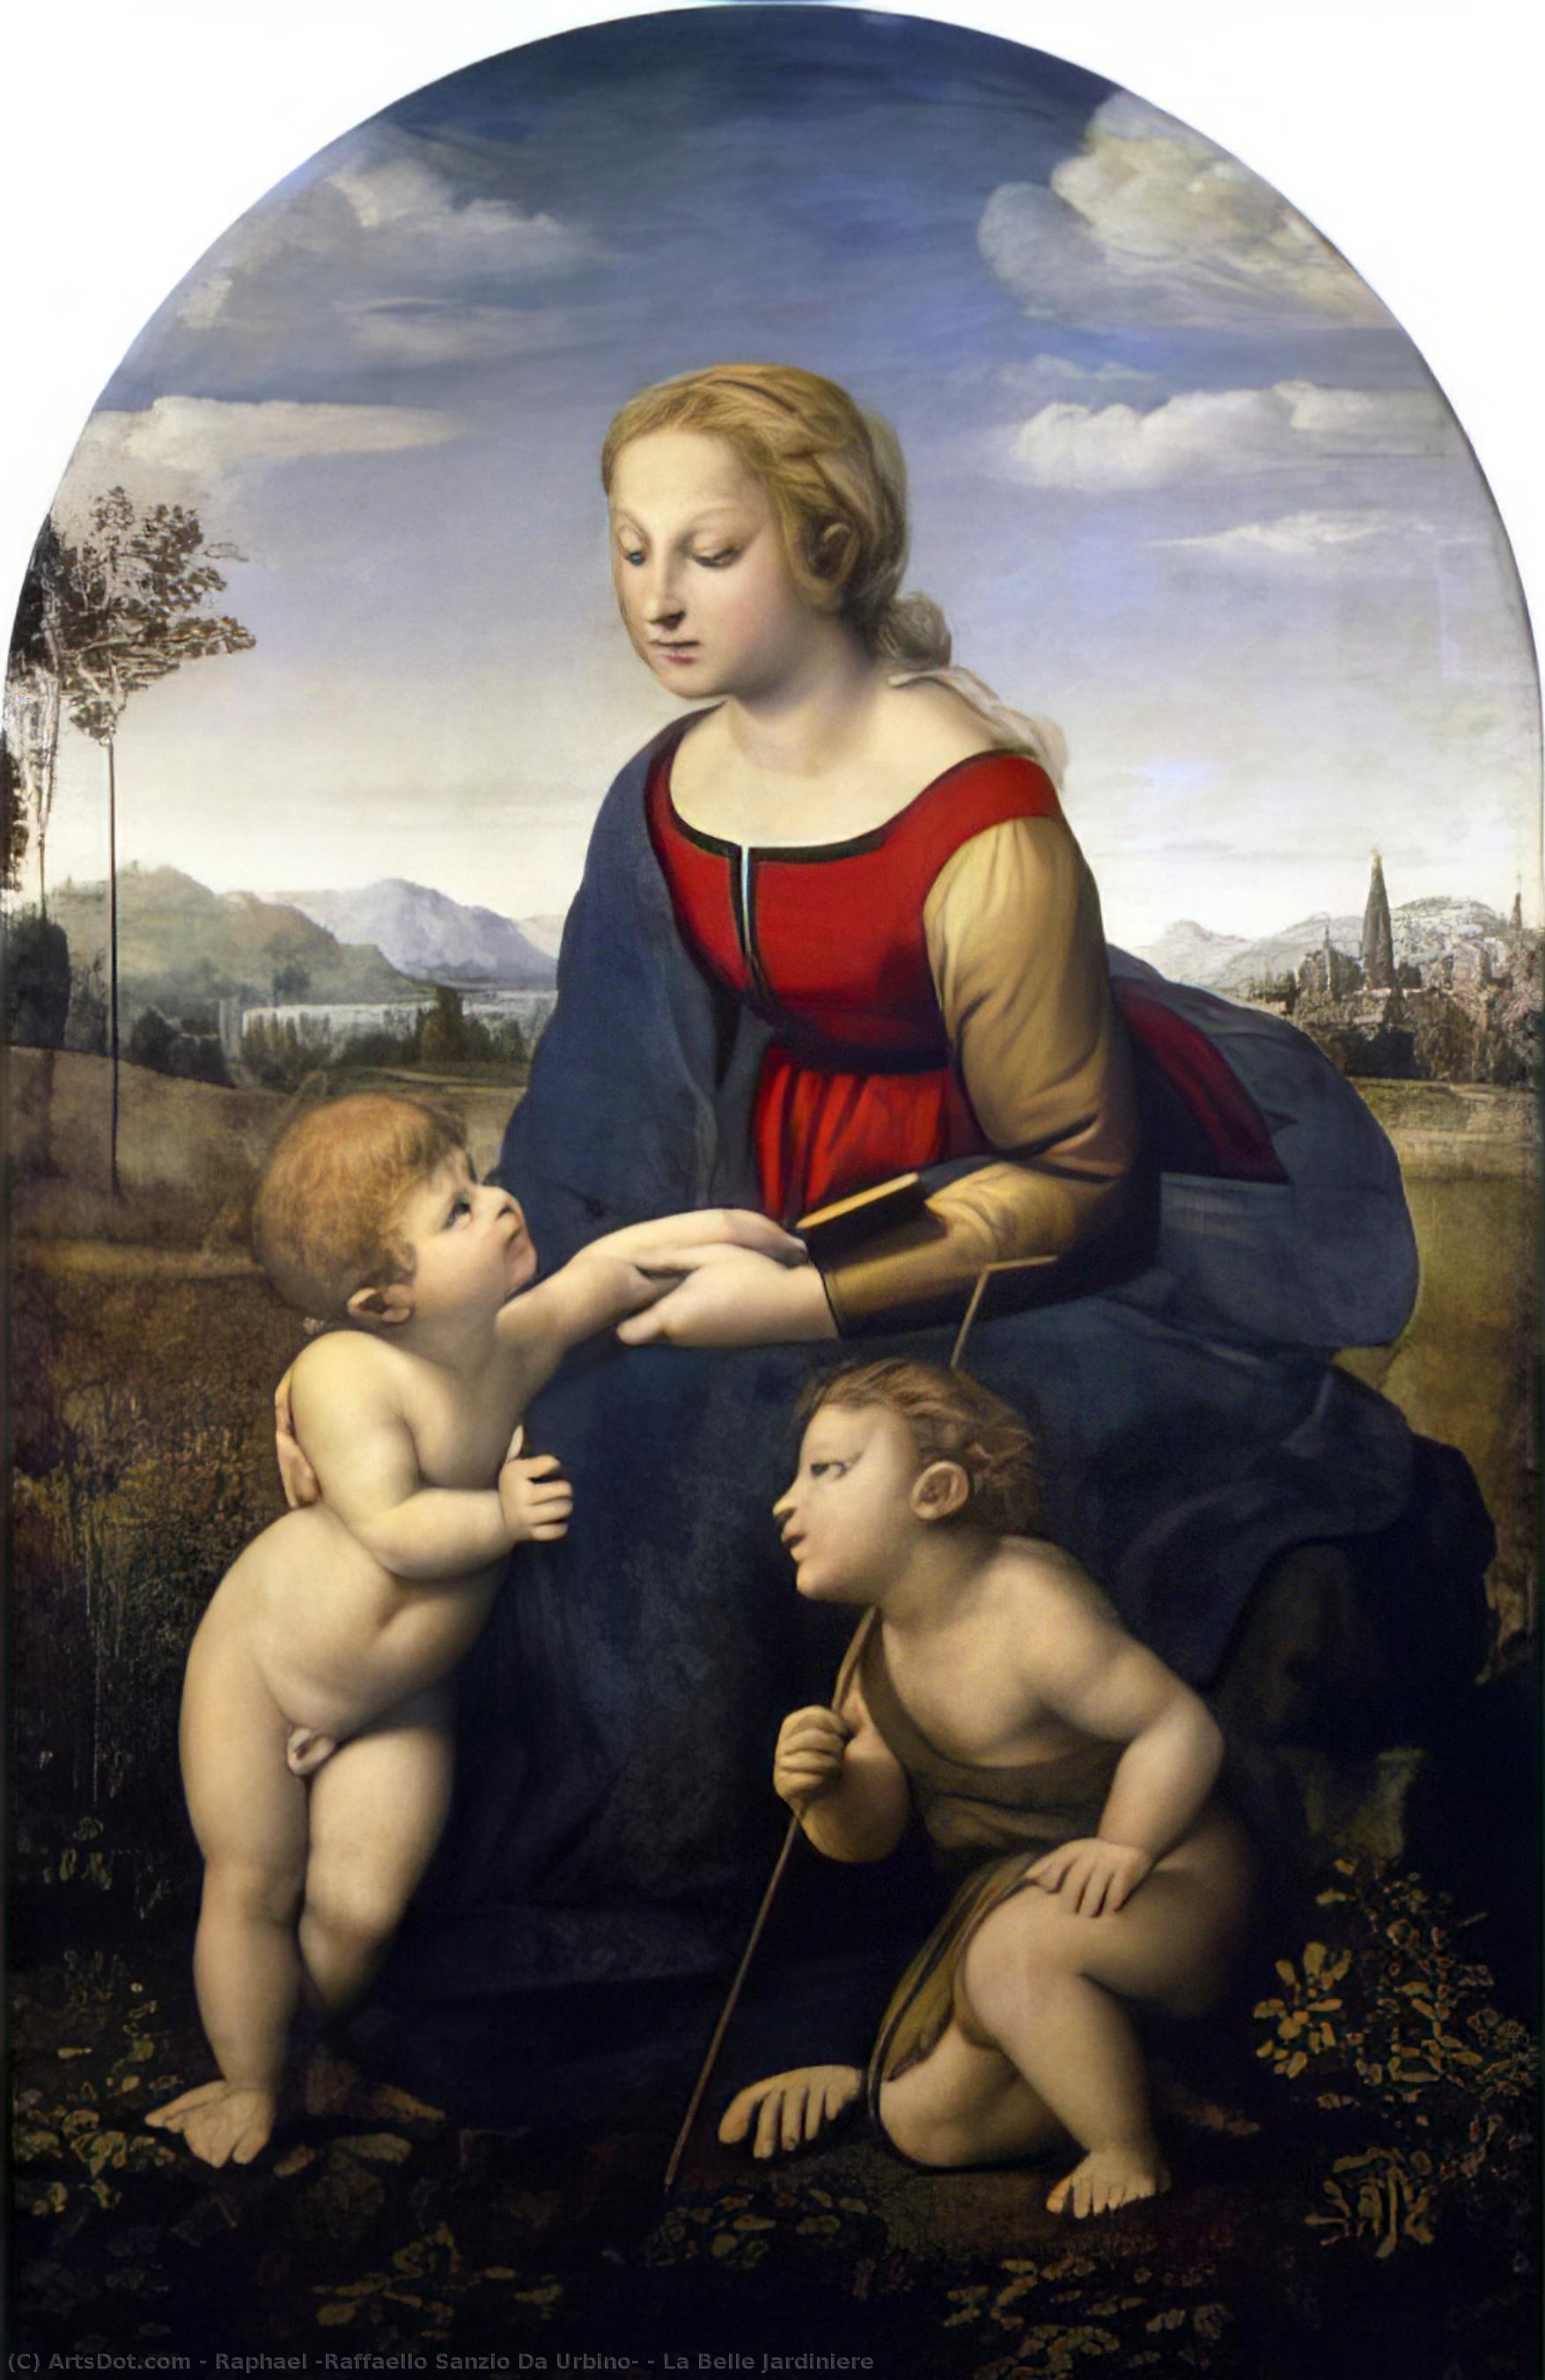 Получить Качественные Печати В Музеях La Belle Jardiniere, 1507 по Raphael (Raffaello Sanzio Da Urbino) (1483-1520, Italy) | ArtsDot.com